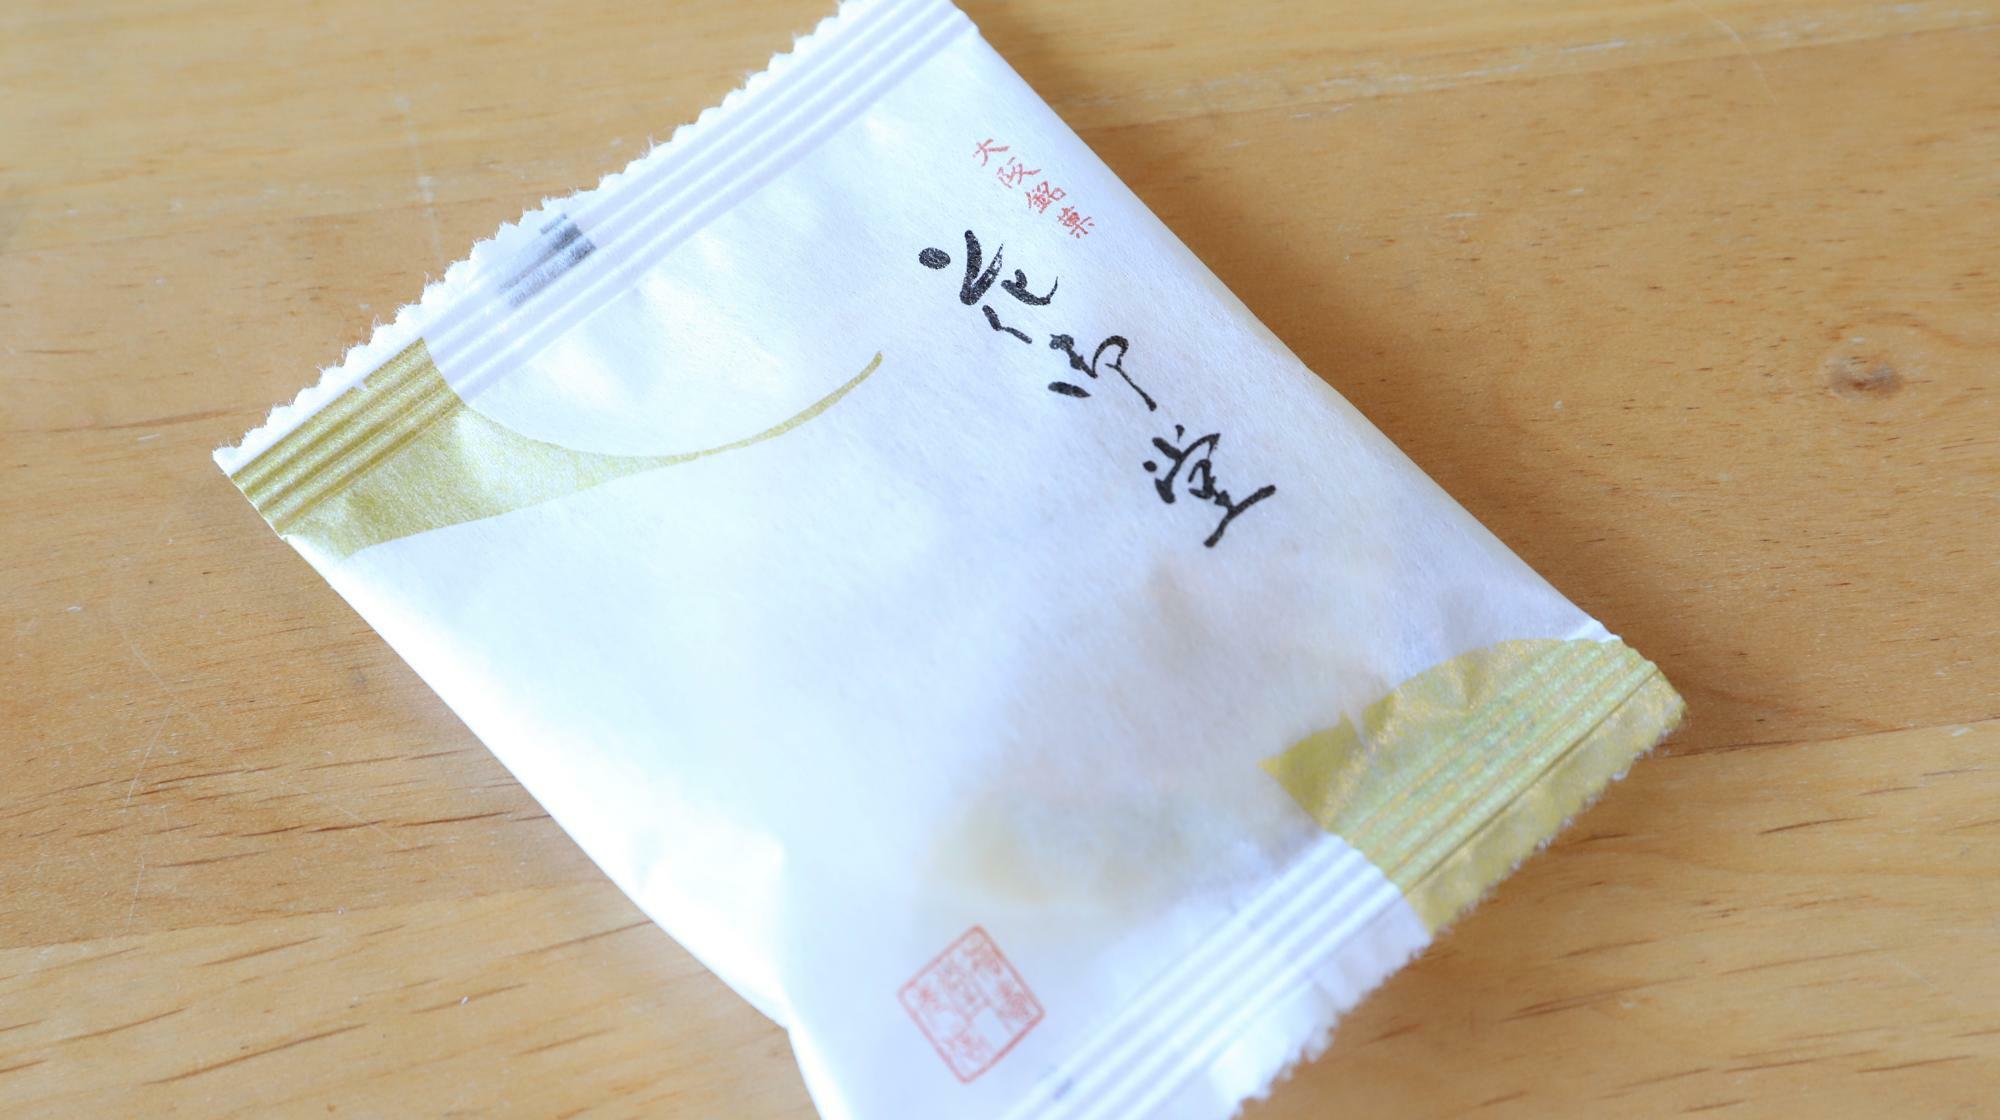 銀杏が描かれた福寿堂秀信、花御堂の菓子袋